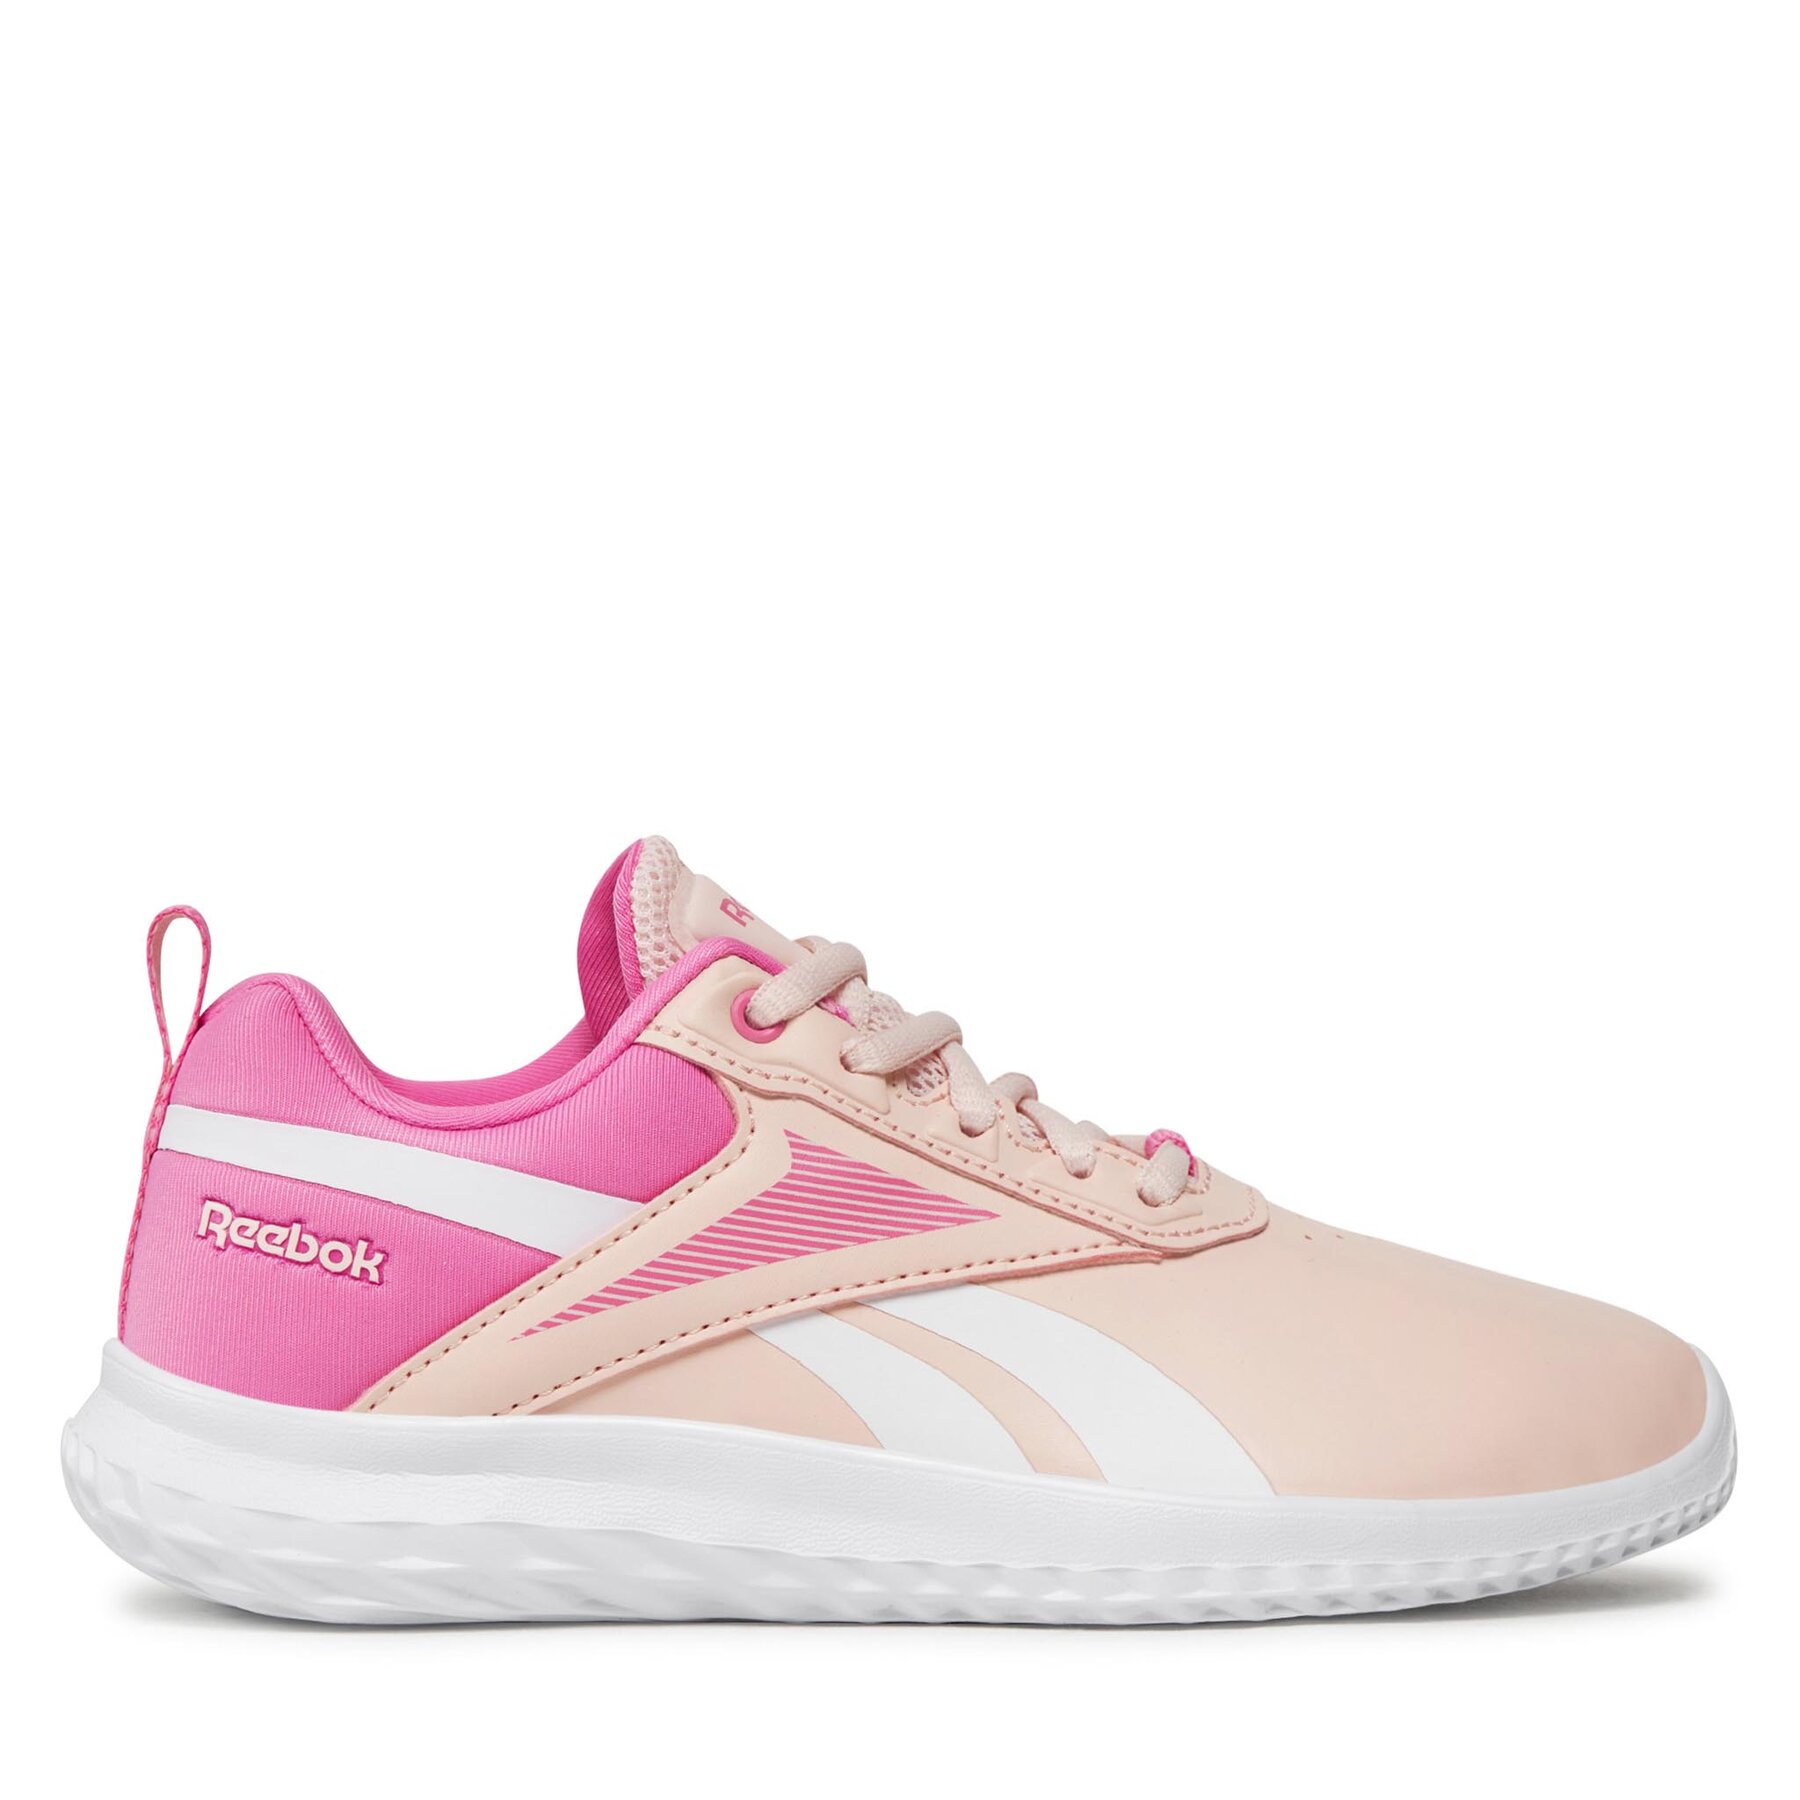 Schuhe Reebok Rush Runner 5 Syn IG0529 Pink von Reebok